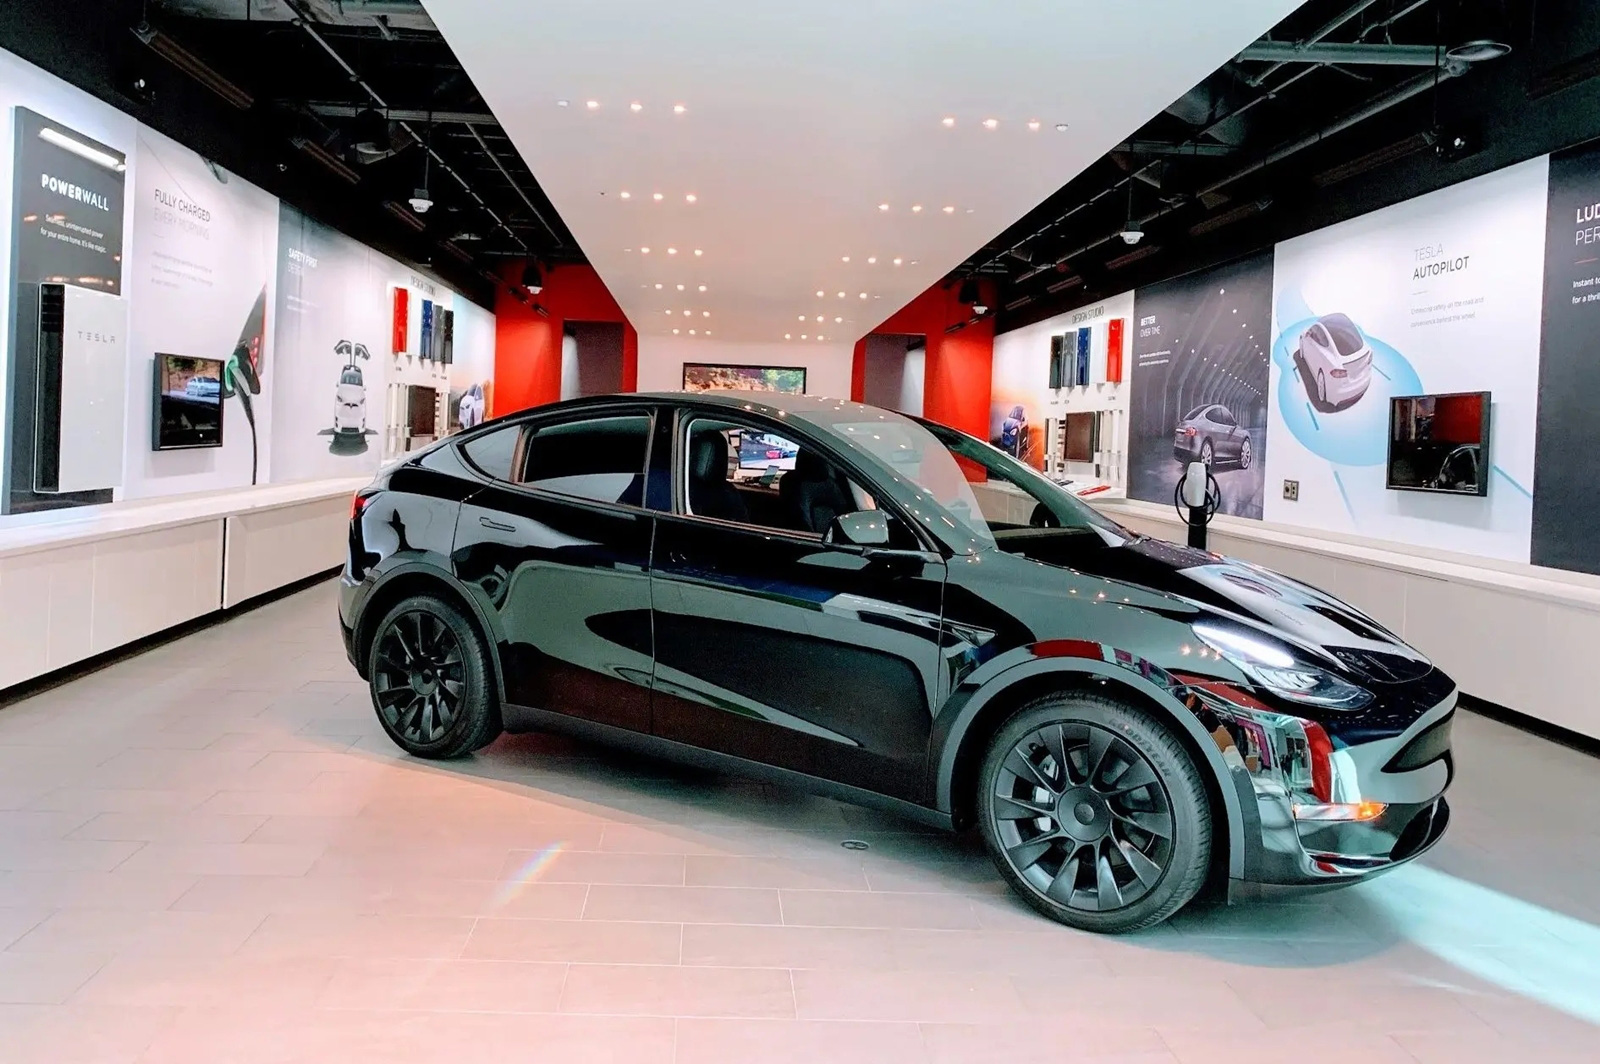 Tháo tung một chiếc Tesla, sếp Toyota thừa nhận đây là ‘tác phẩm nghệ thuật’ - Ảnh 4.